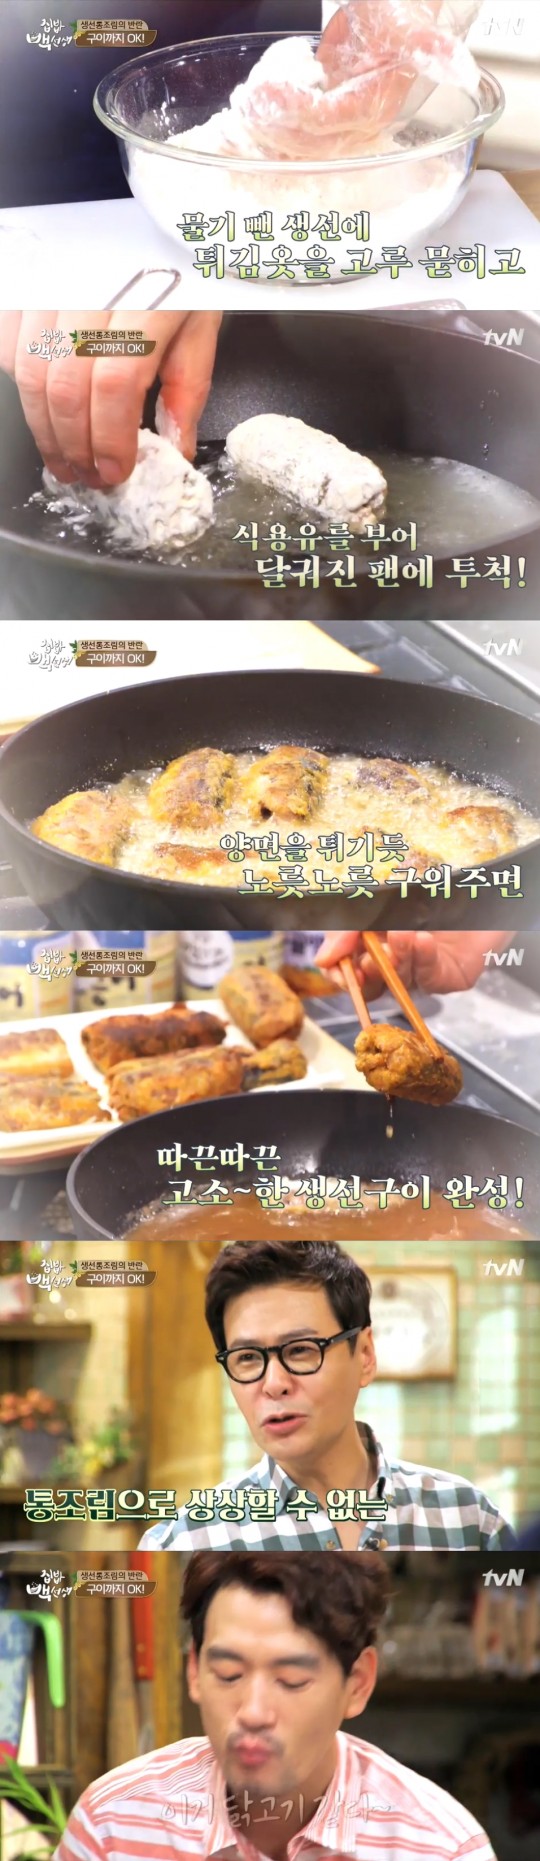 집밥 백선생 백종원 생선통조림으로 생선구이까지 튀김가루에 튀기듯 구워 | 한국경제